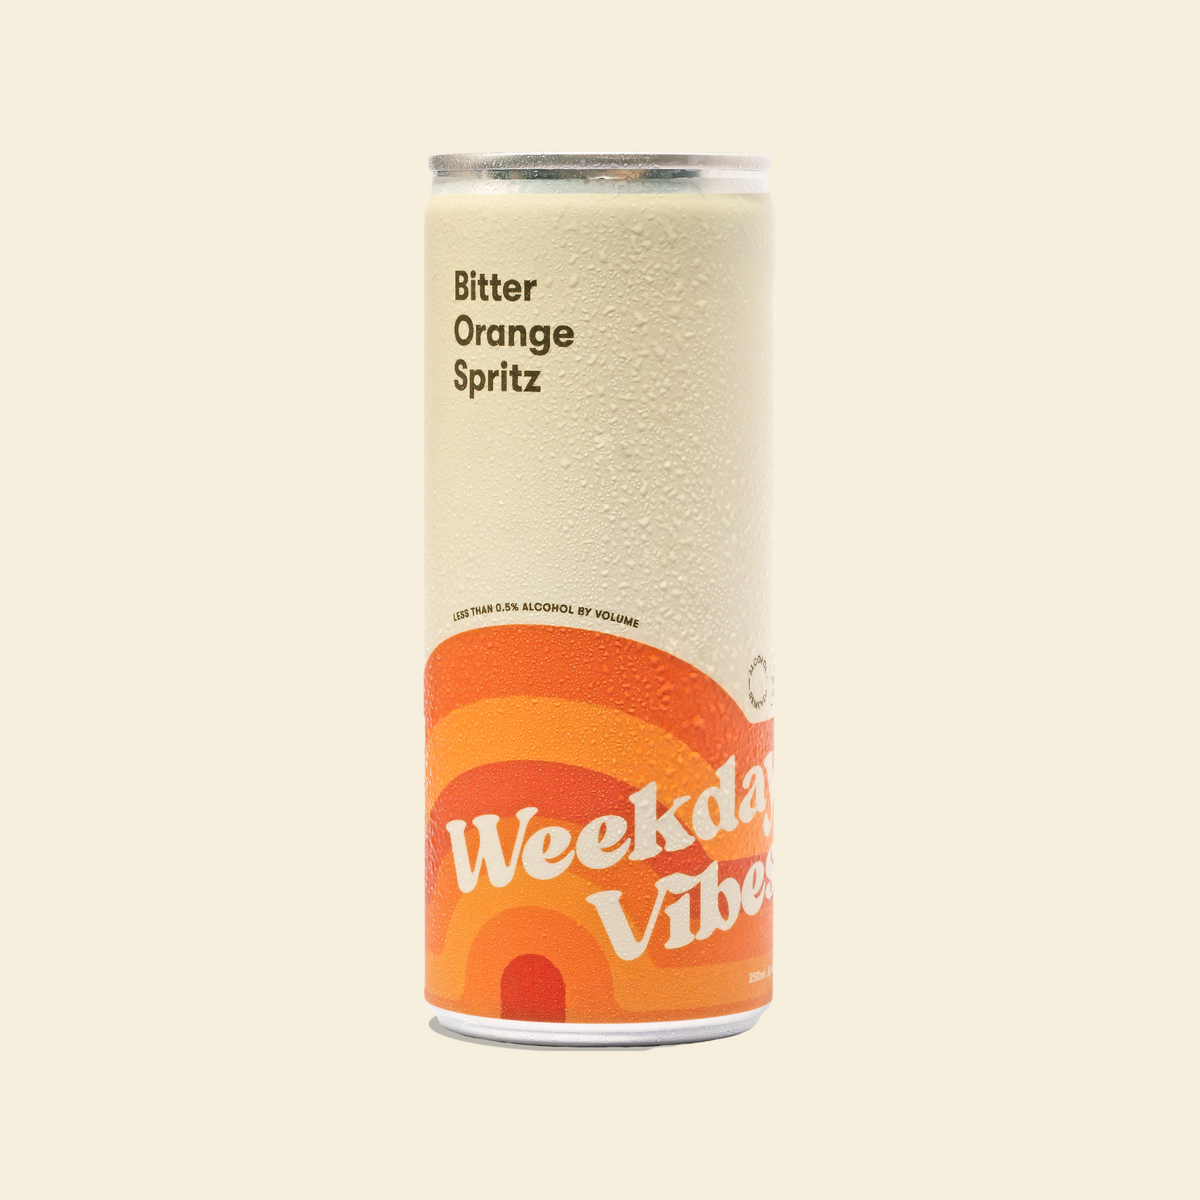 Weekday Vibes - Bitter Orange Spritz - 4-Pack